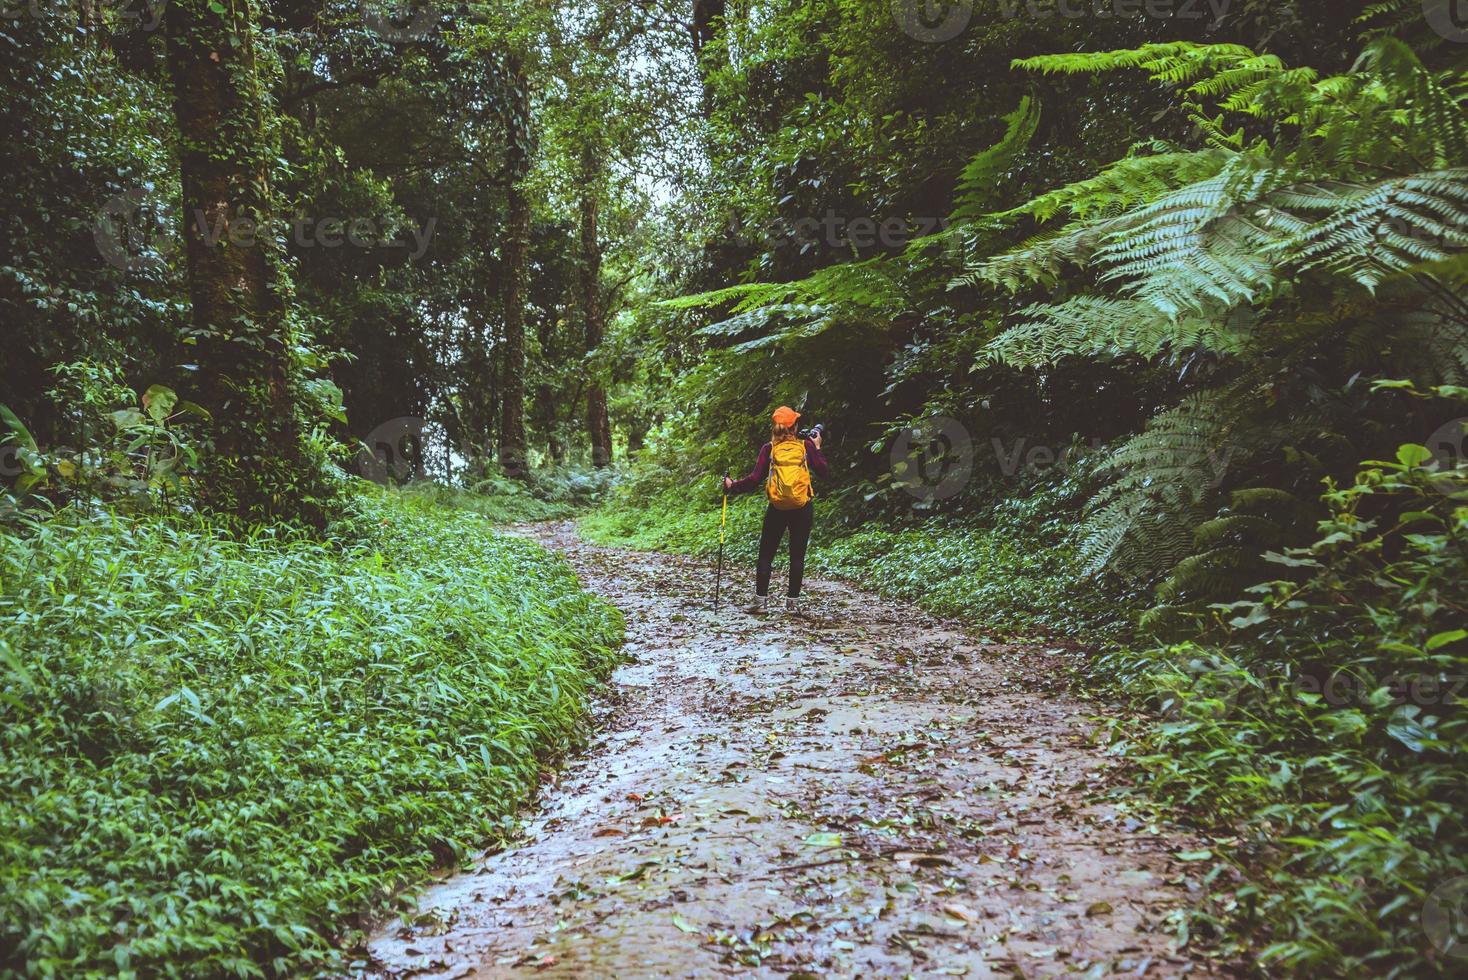 fotógrafo mujer asiática. fotografía de viaje de la naturaleza. viaje relajarse en el paseo de vacaciones en el bosque. foto